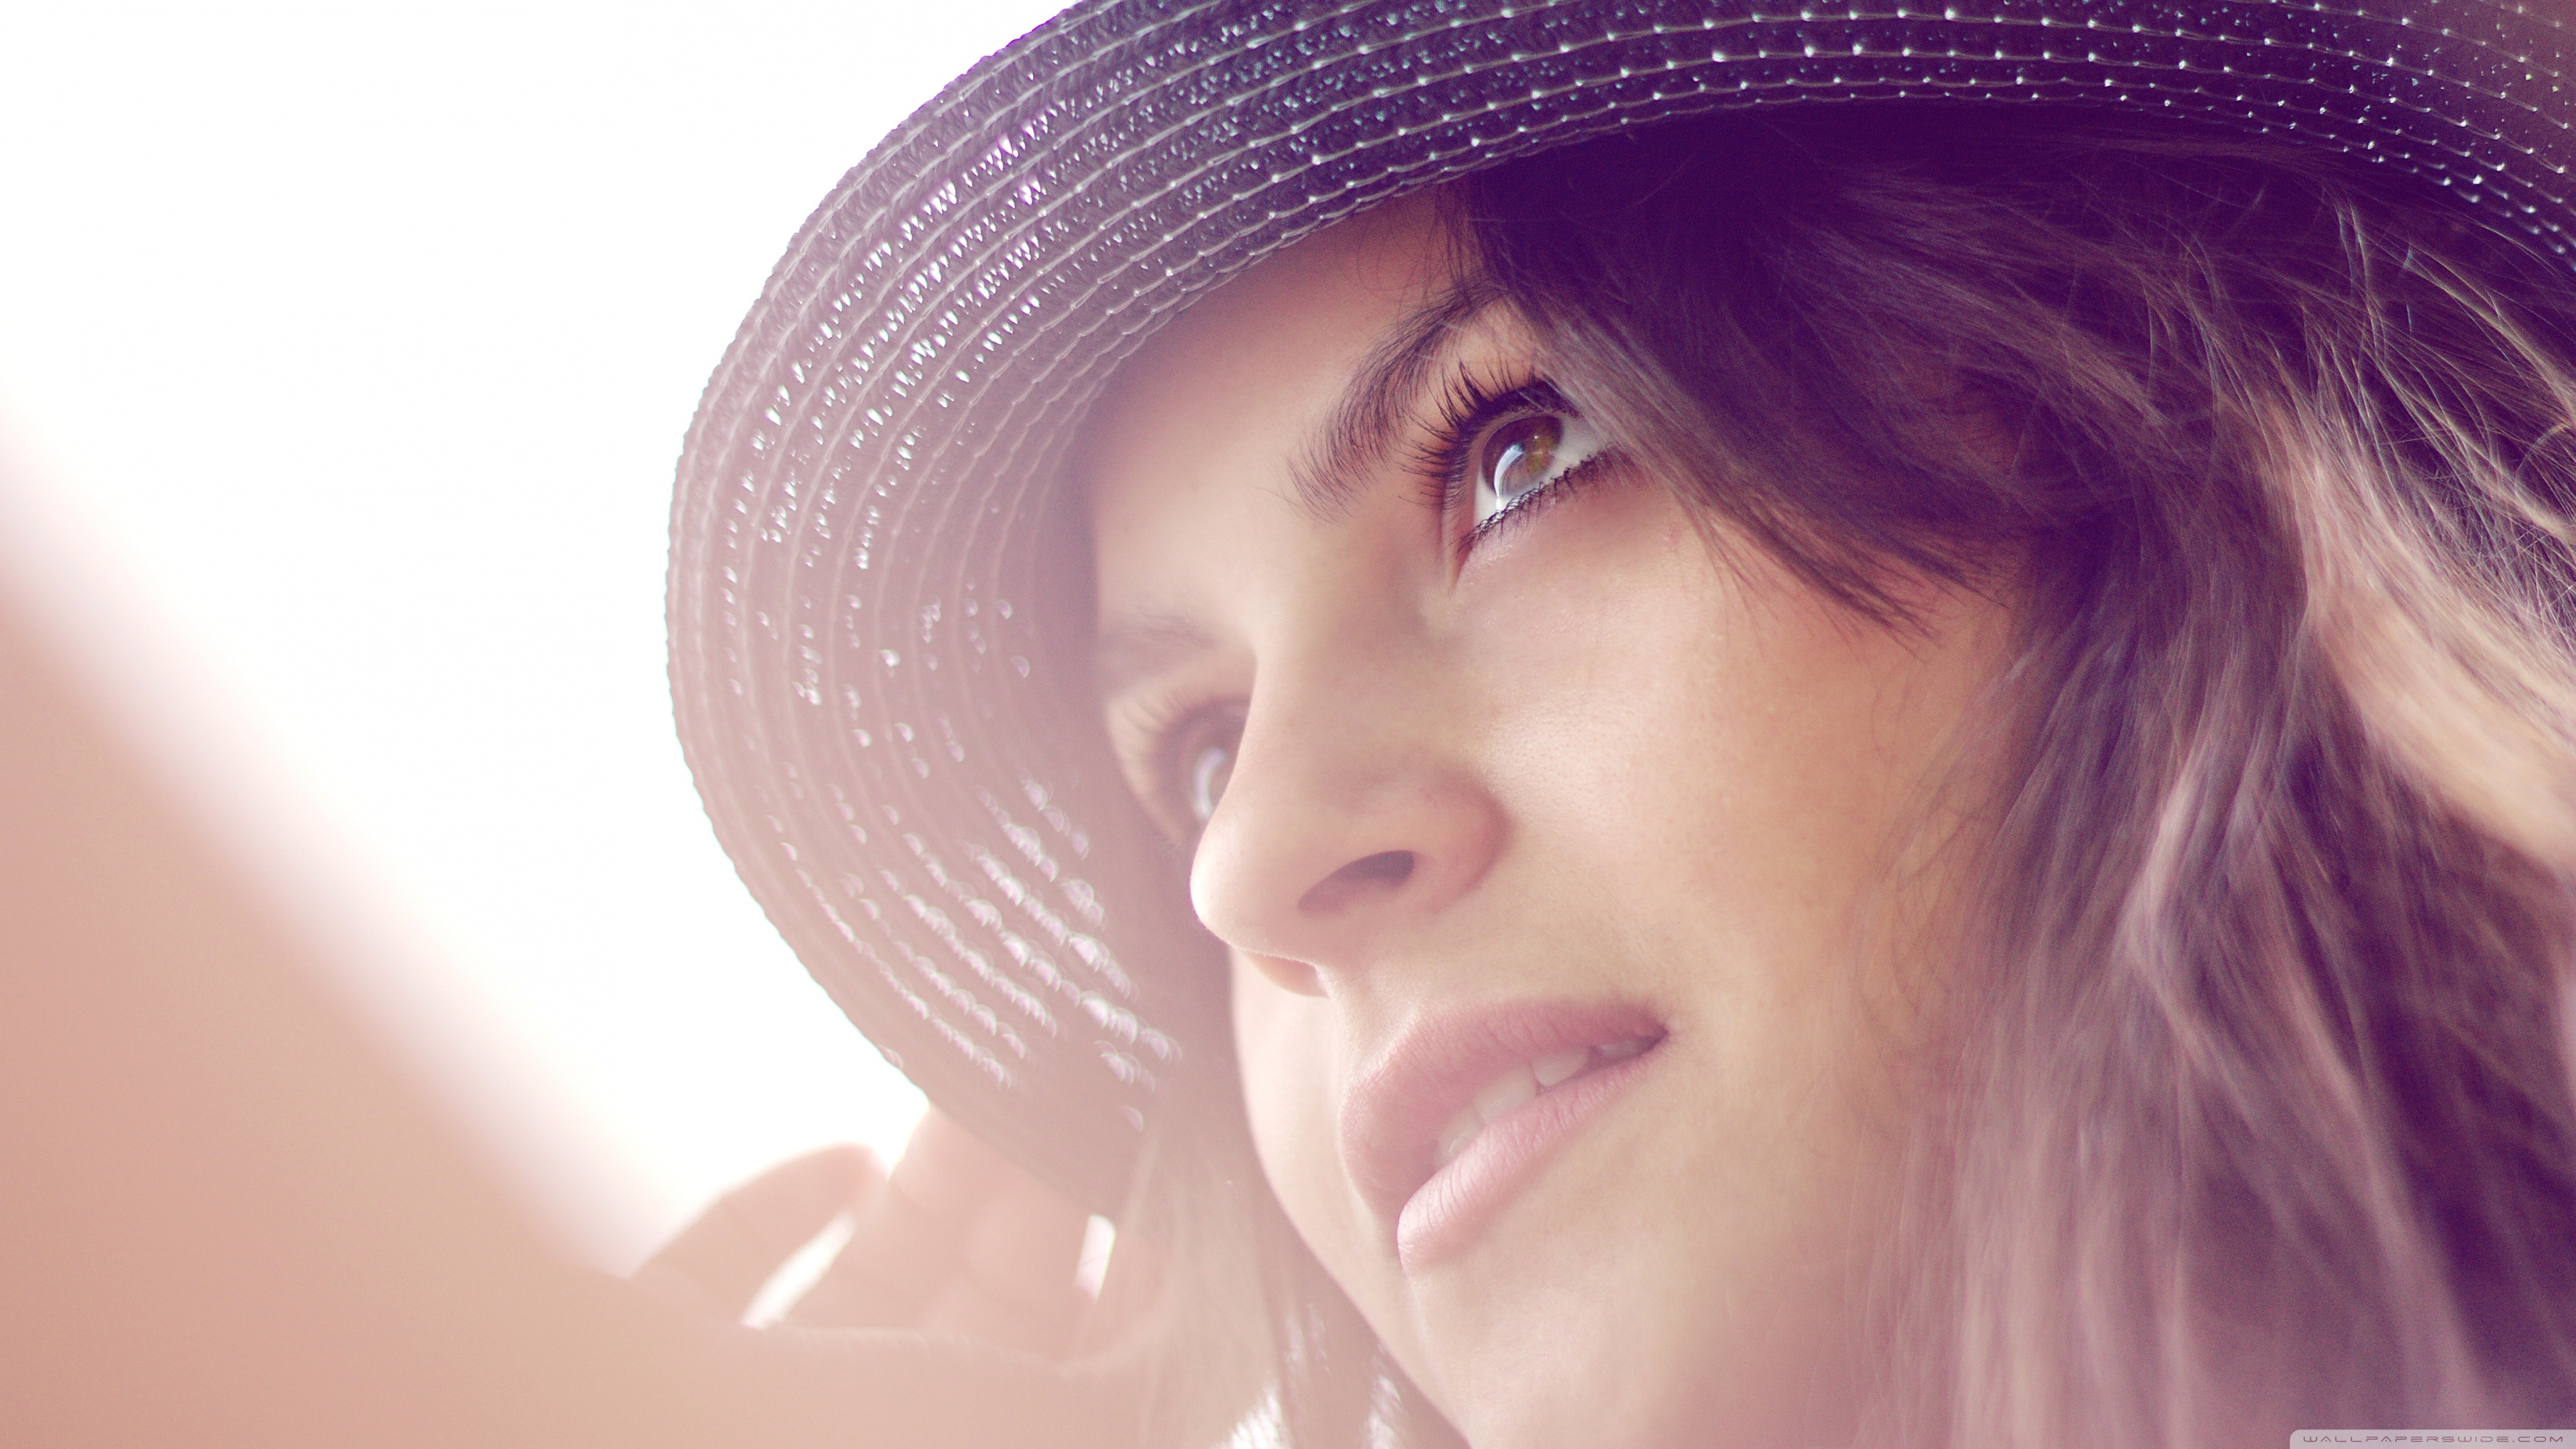 Girl Wearing A Hat Ultra HD Desktop Background Wallpaper for 4K UHD TV, Widescreen & UltraWide Desktop & Laptop